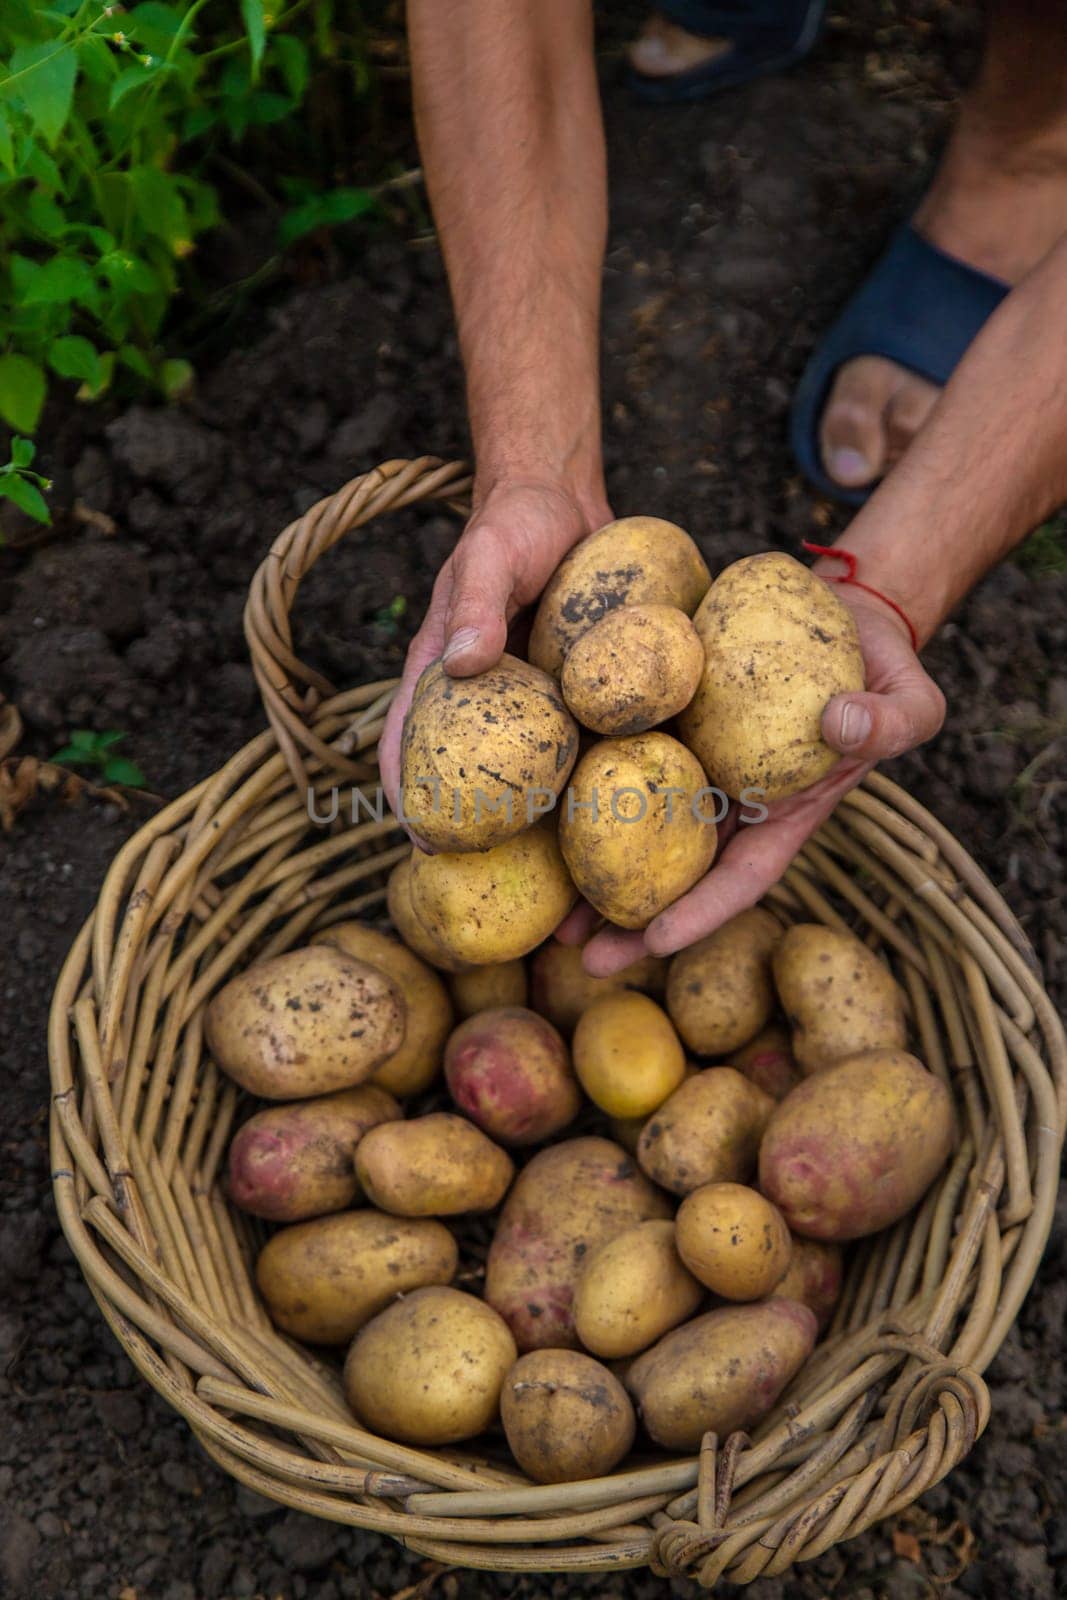 Potato harvest in the garden in hands. selective focus. food.